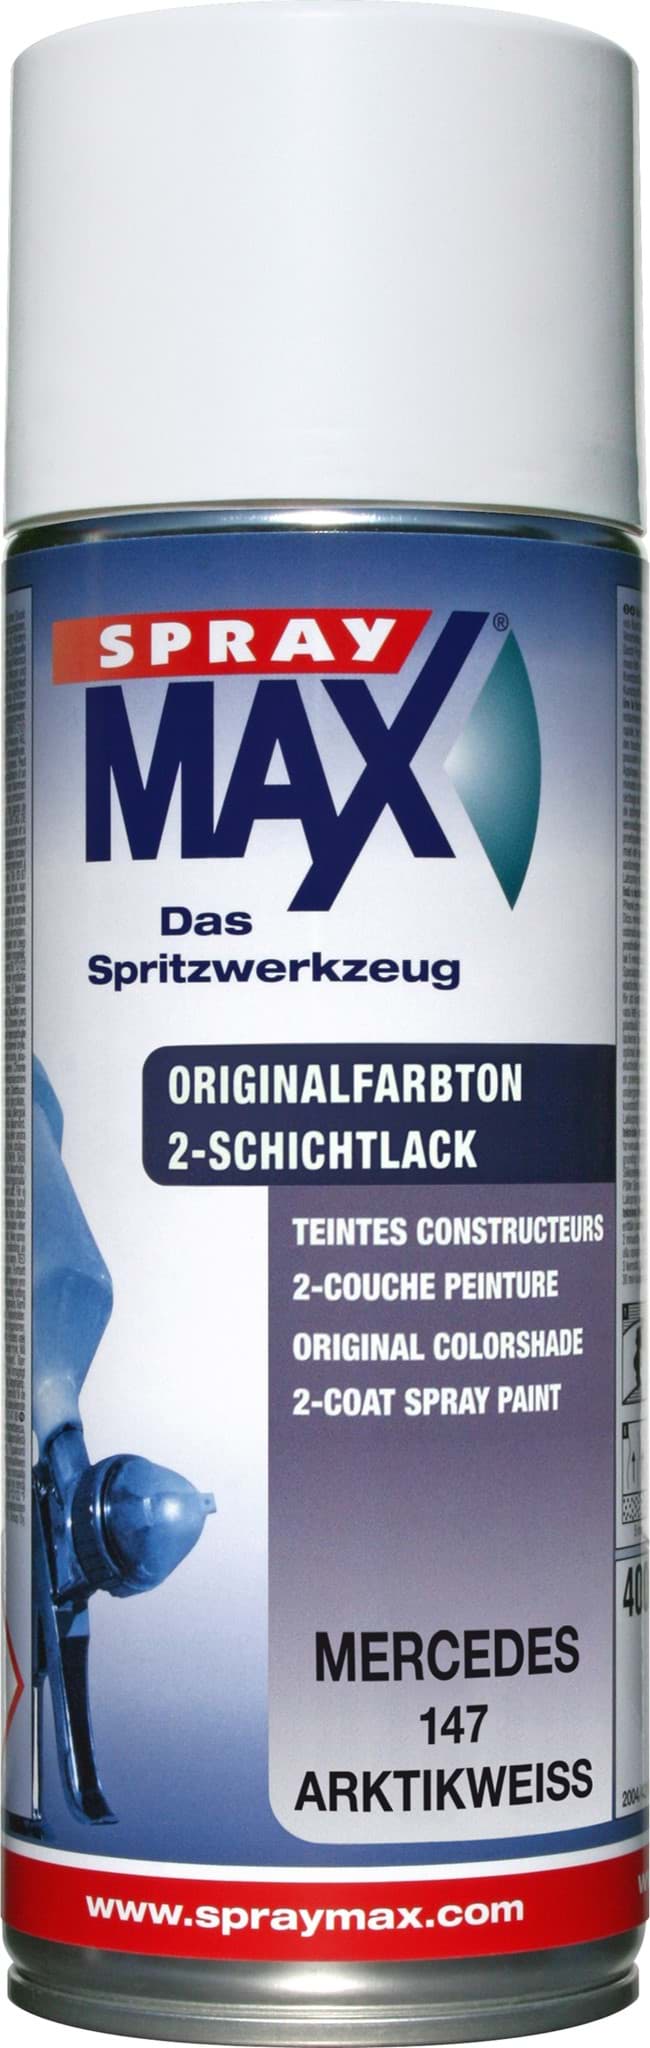 Picture of SprayMax Originalfarbton für Mercedes 147 arktikweiss